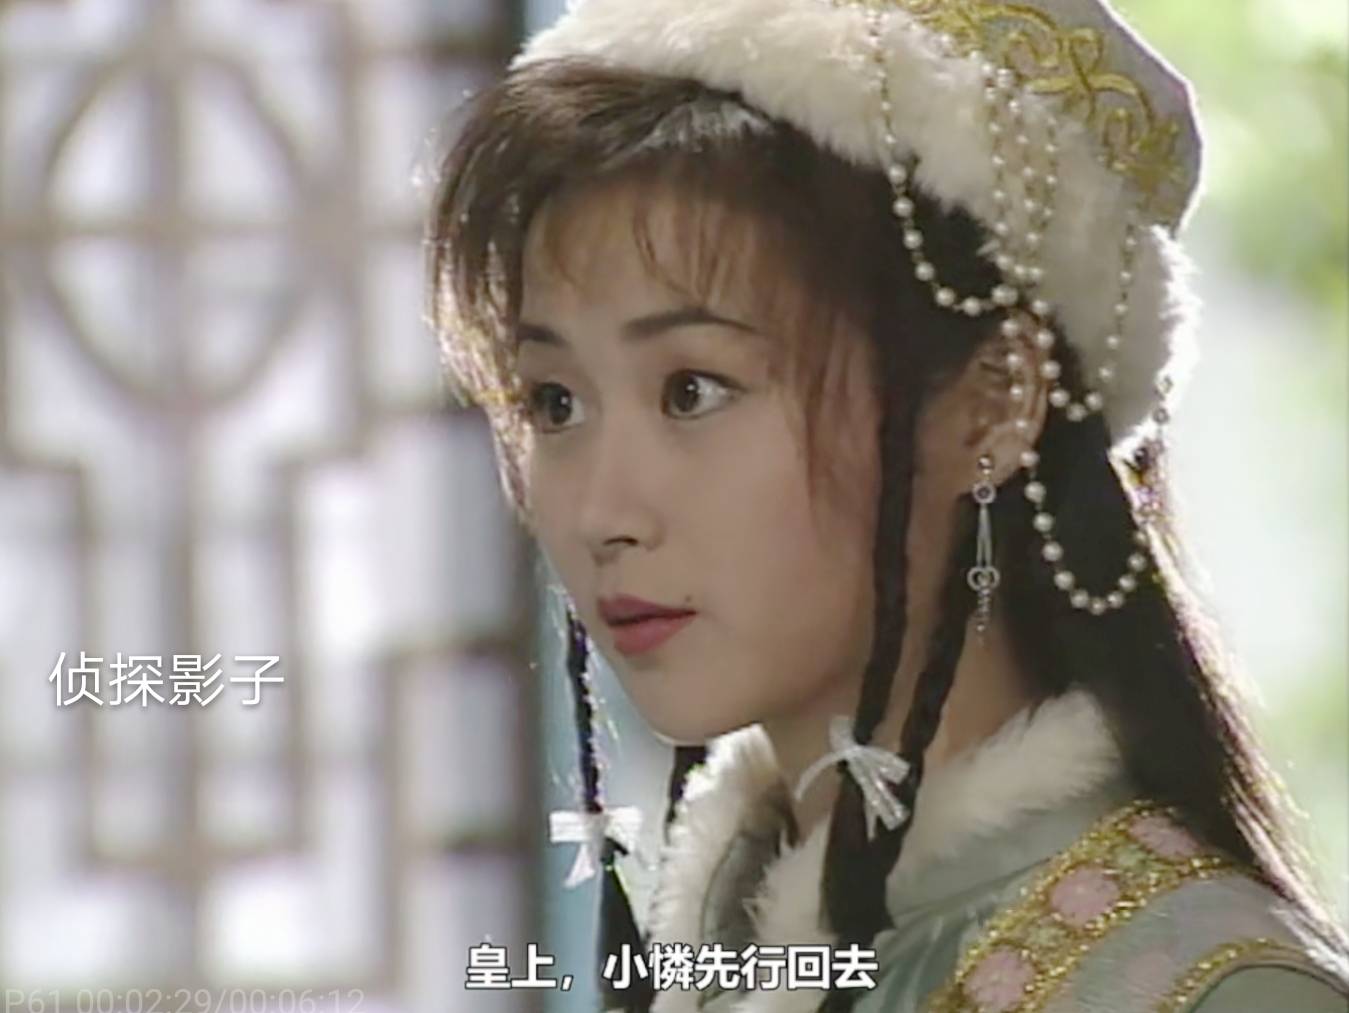 94年播出,万绮雯,吕颂贤等主演的亚视古装剧《碧血青天珍珠旗》中